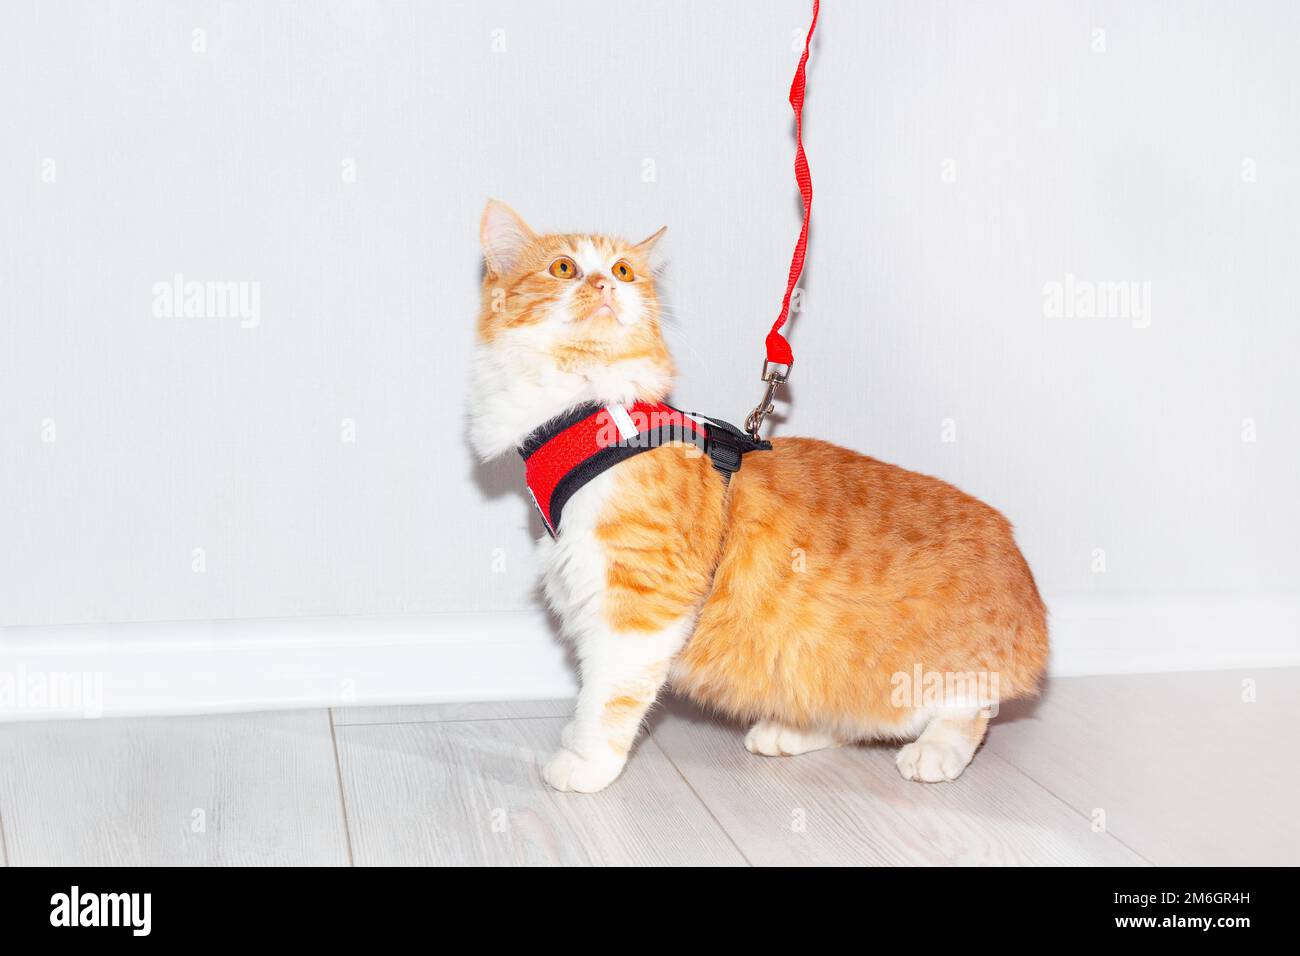 Gatto giovane con un'imbracatura rossa e guinzaglio su uno sfondo chiaro. Accessorio per gli animali da passeggio. Foto Stock